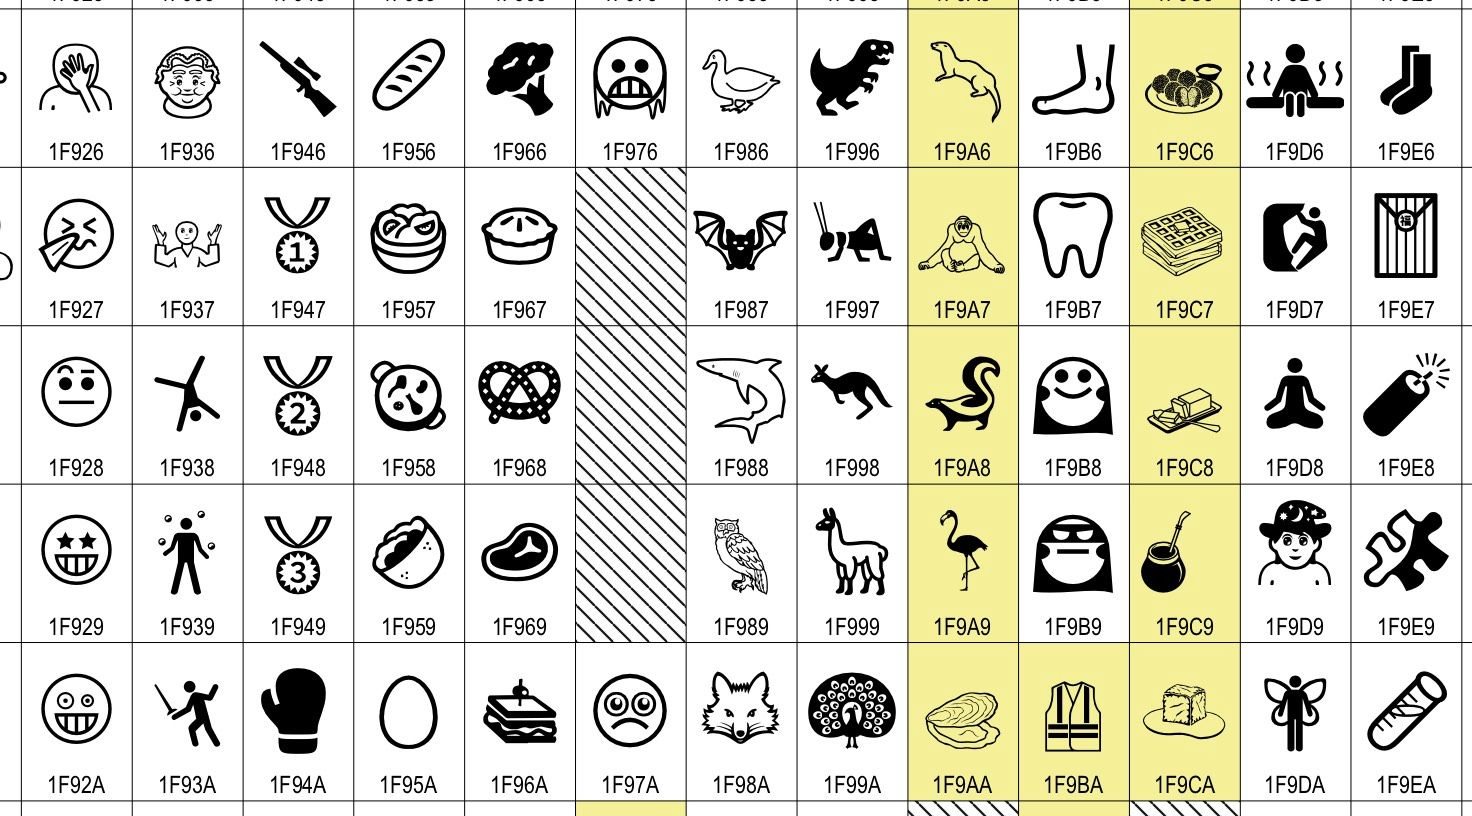 Unicode Character Chart